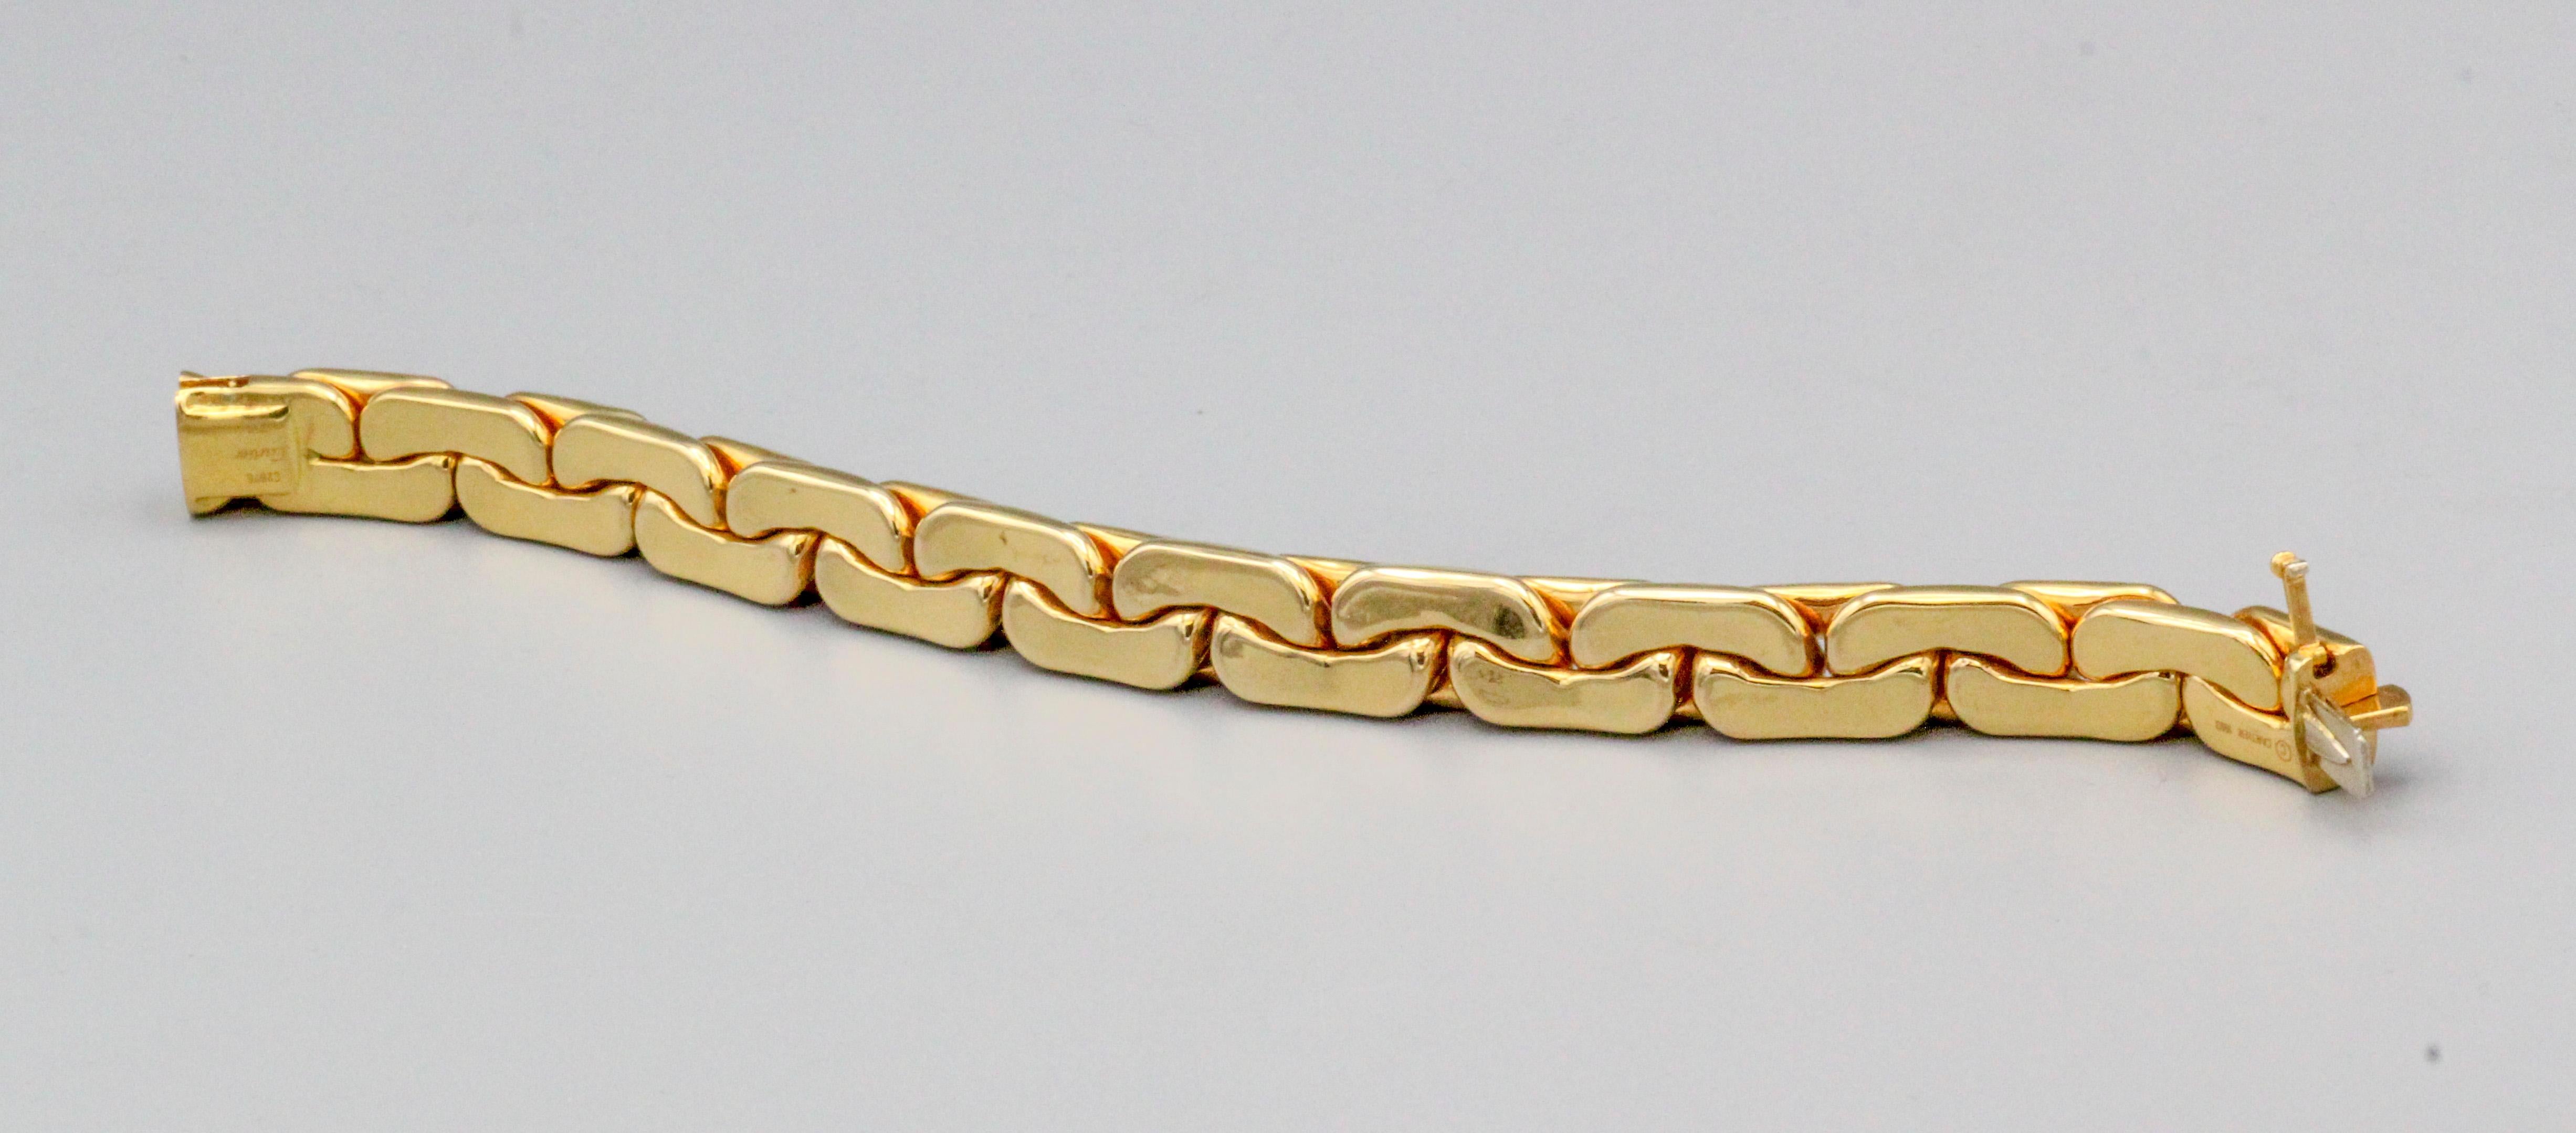 Cartier 18k Gold länglicher Kandare Link Armband für Damen oder Herren